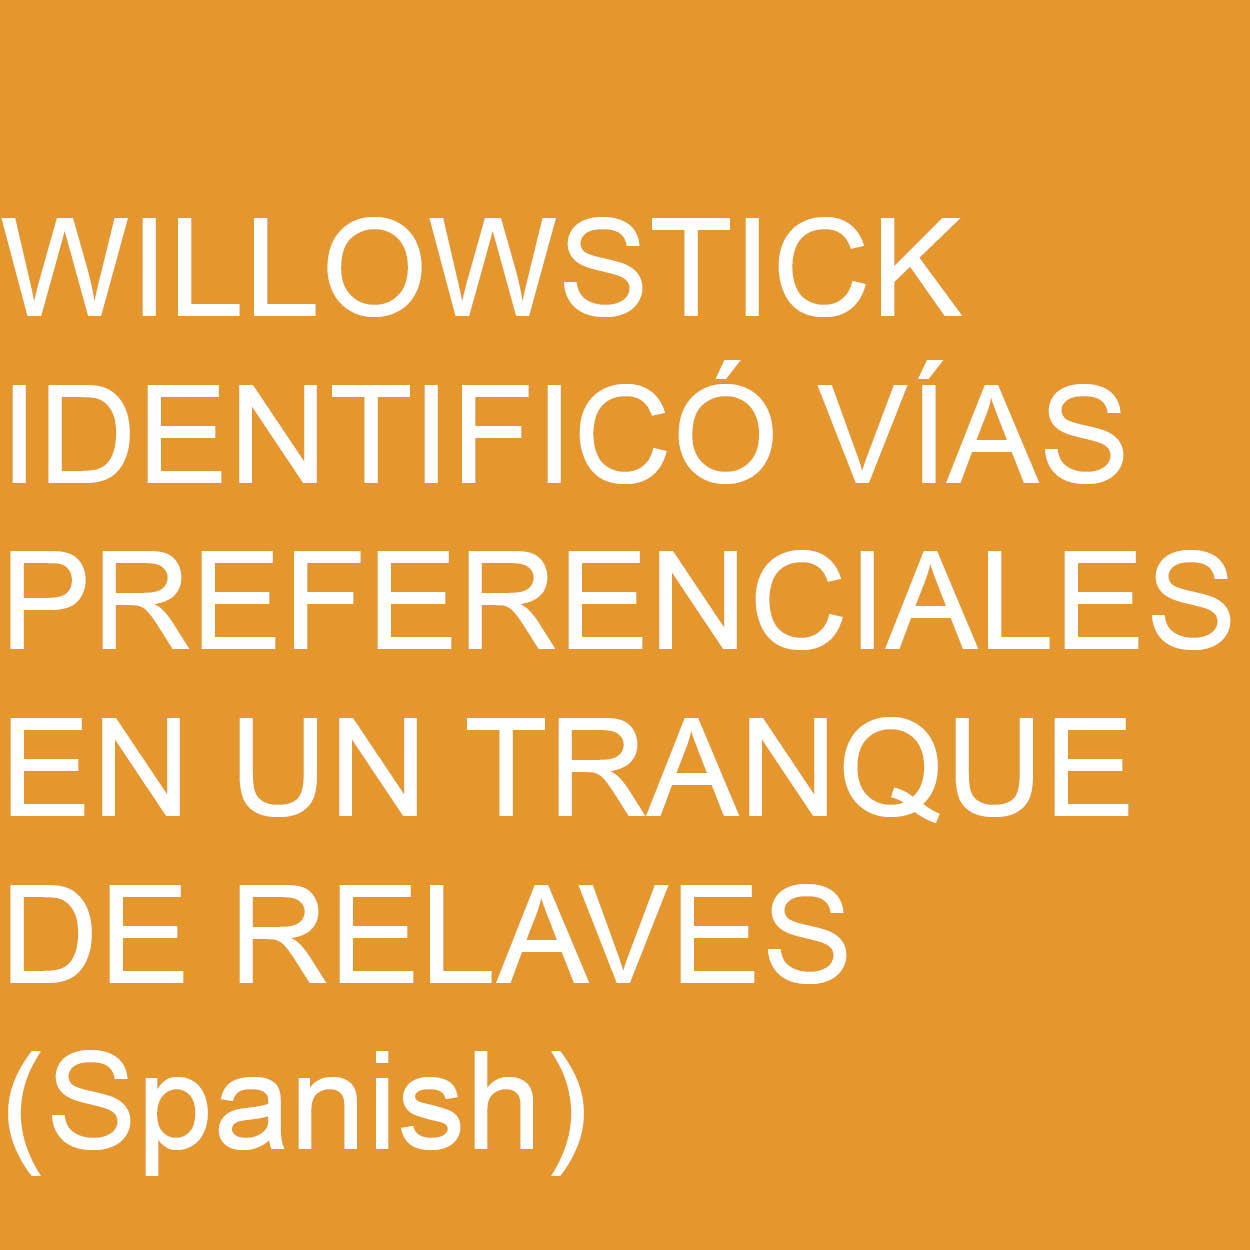 Willowstick Identifico via preferencialies en un tranque de relaves.jpg